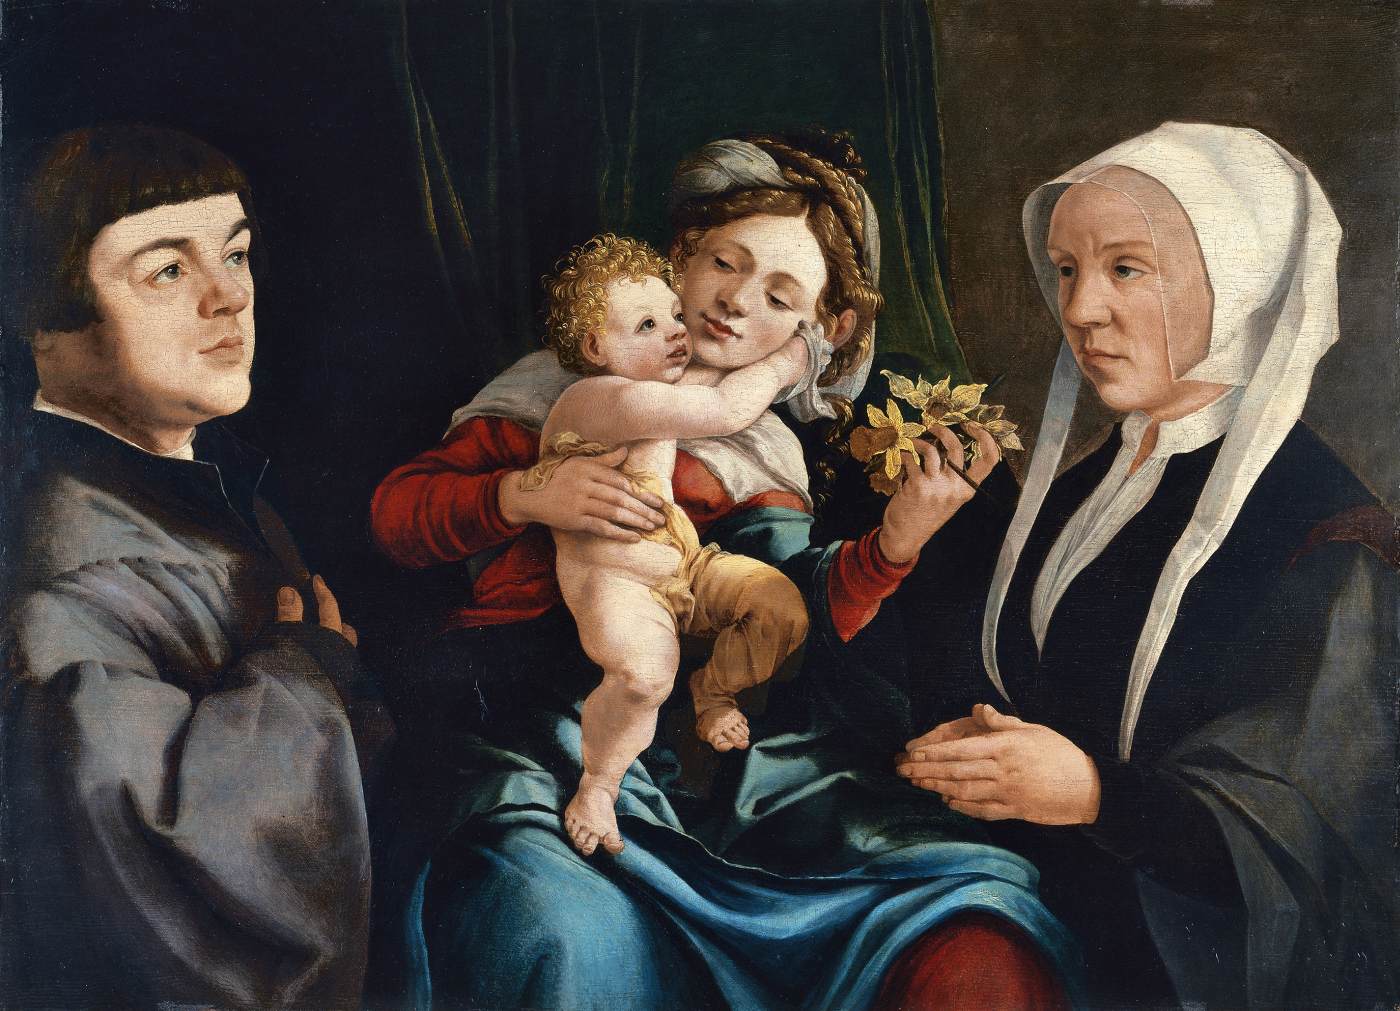 La vergine dei narcisos con il bambino e il donatore Cristo